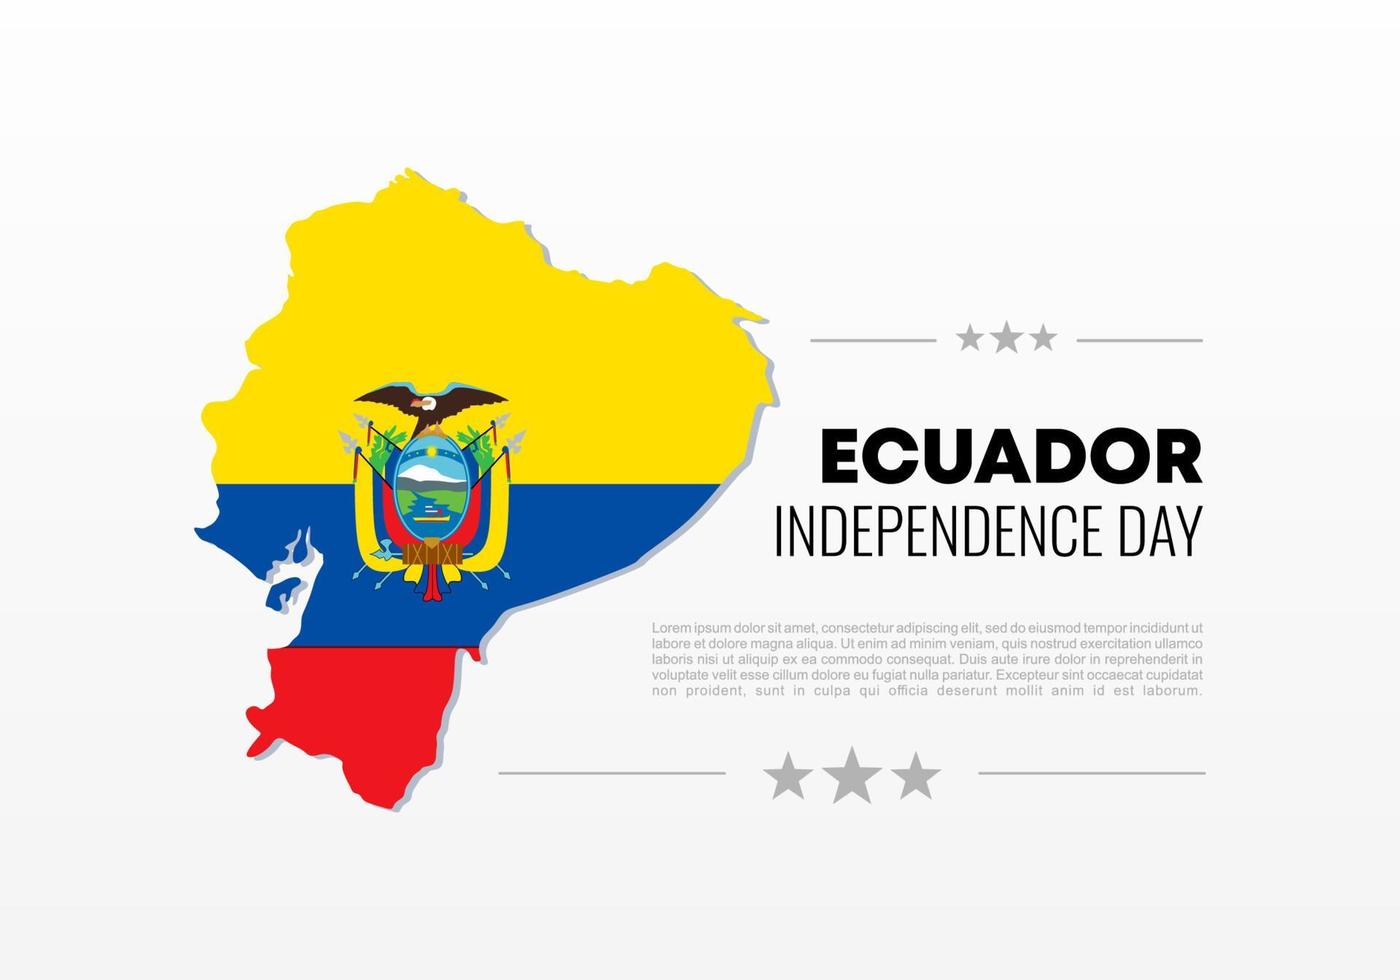 fête de l'indépendance de l'équateur pour la célébration nationale le 10 août. vecteur